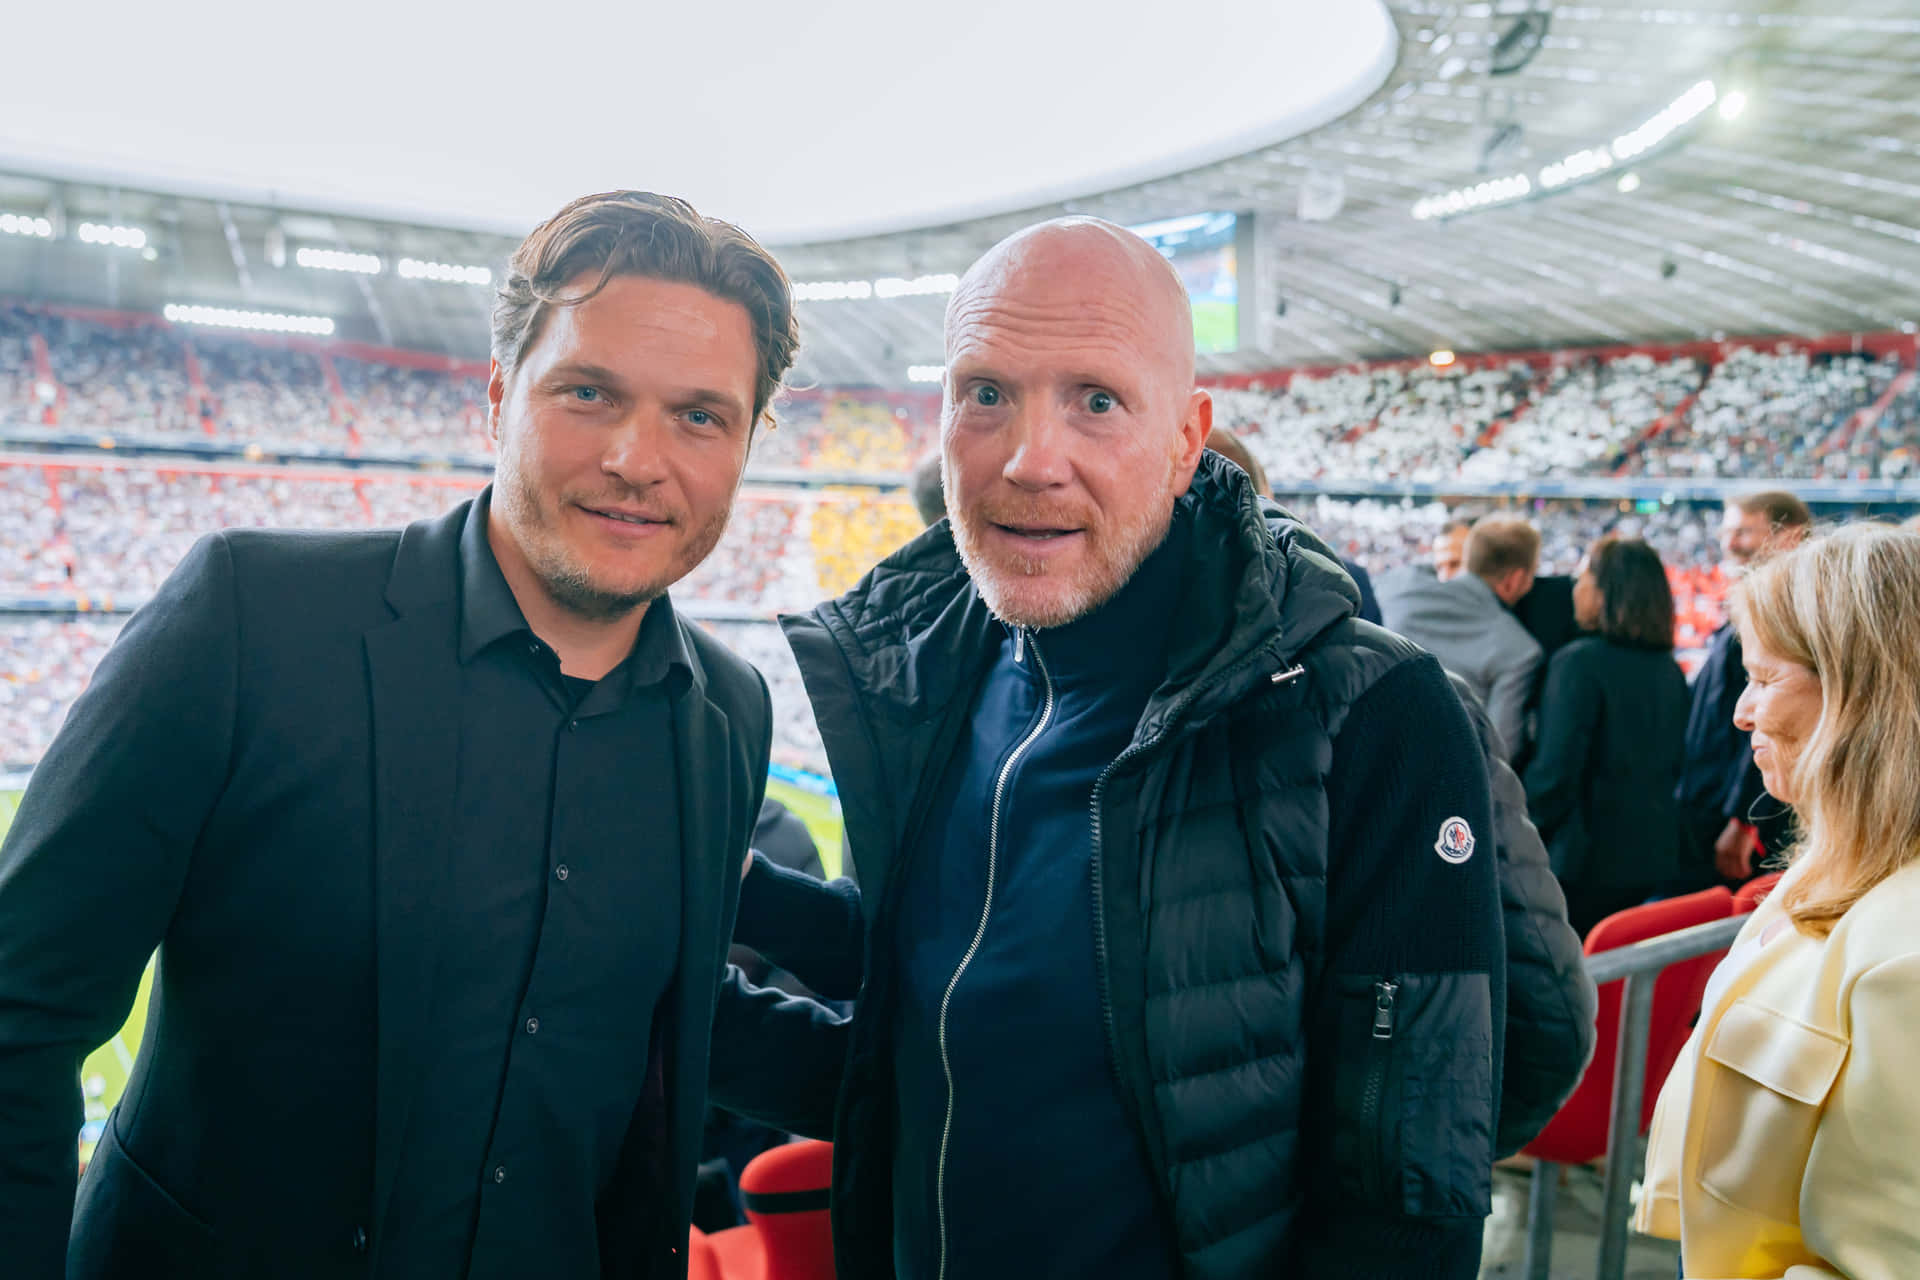 Tyske Fodboldofficialer Matthias Sammer og Edin Terzic er begge blevet udnævnt til Coaches for Det Tyske Nationale Fodboldhold. Wallpaper